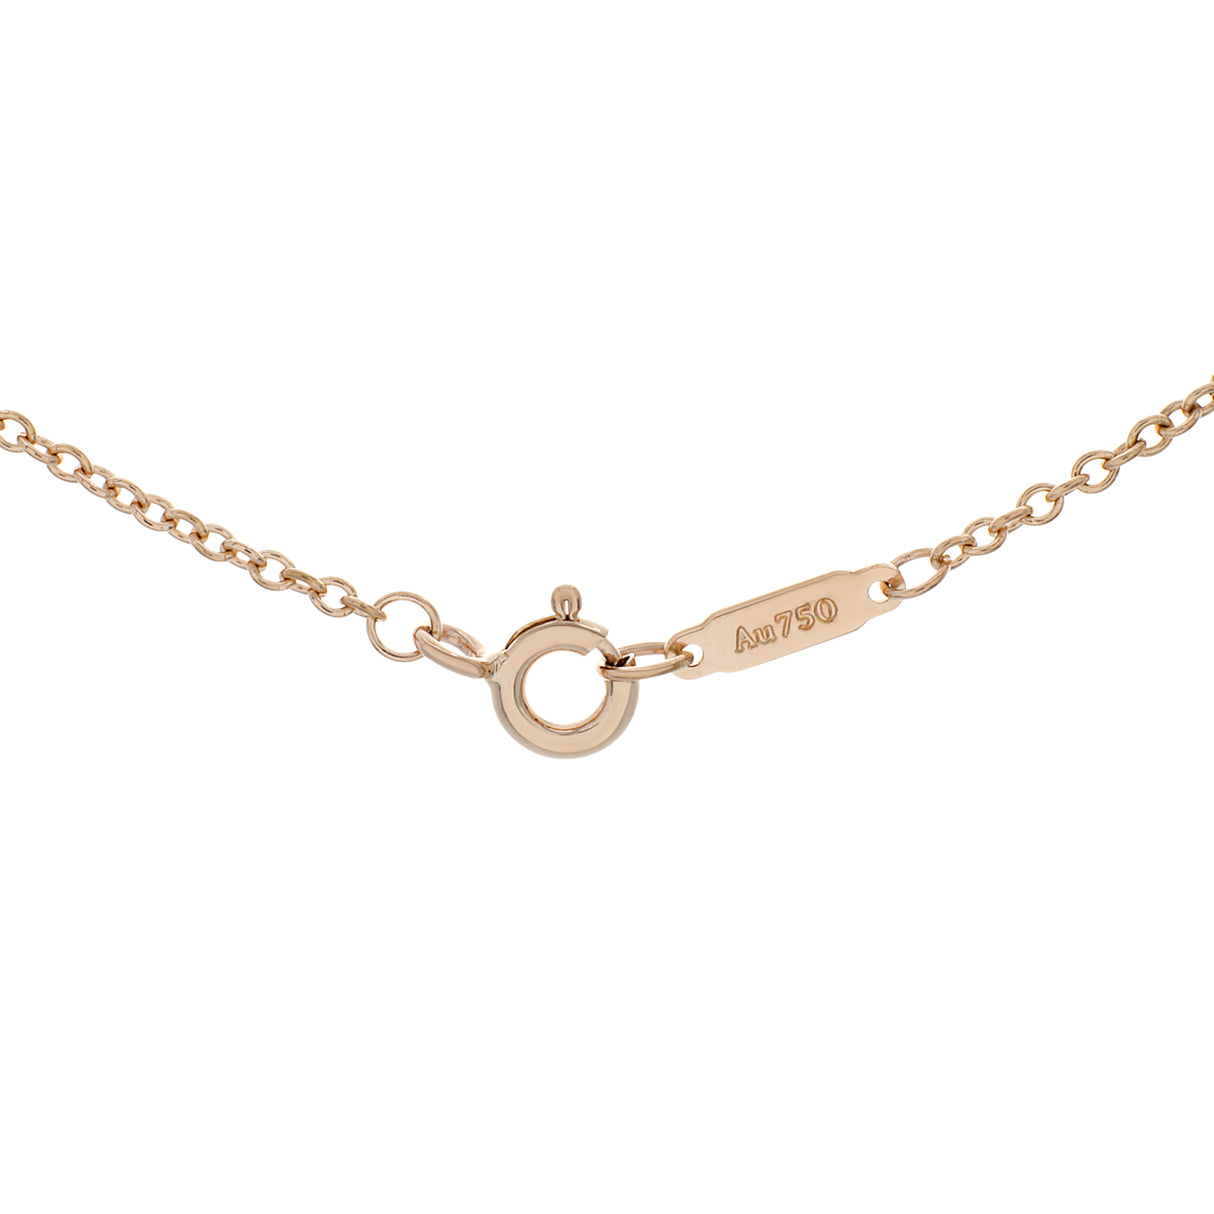 Tiffany & Co. 18k Rose Gold Diamond Mini Crown Key Pendant